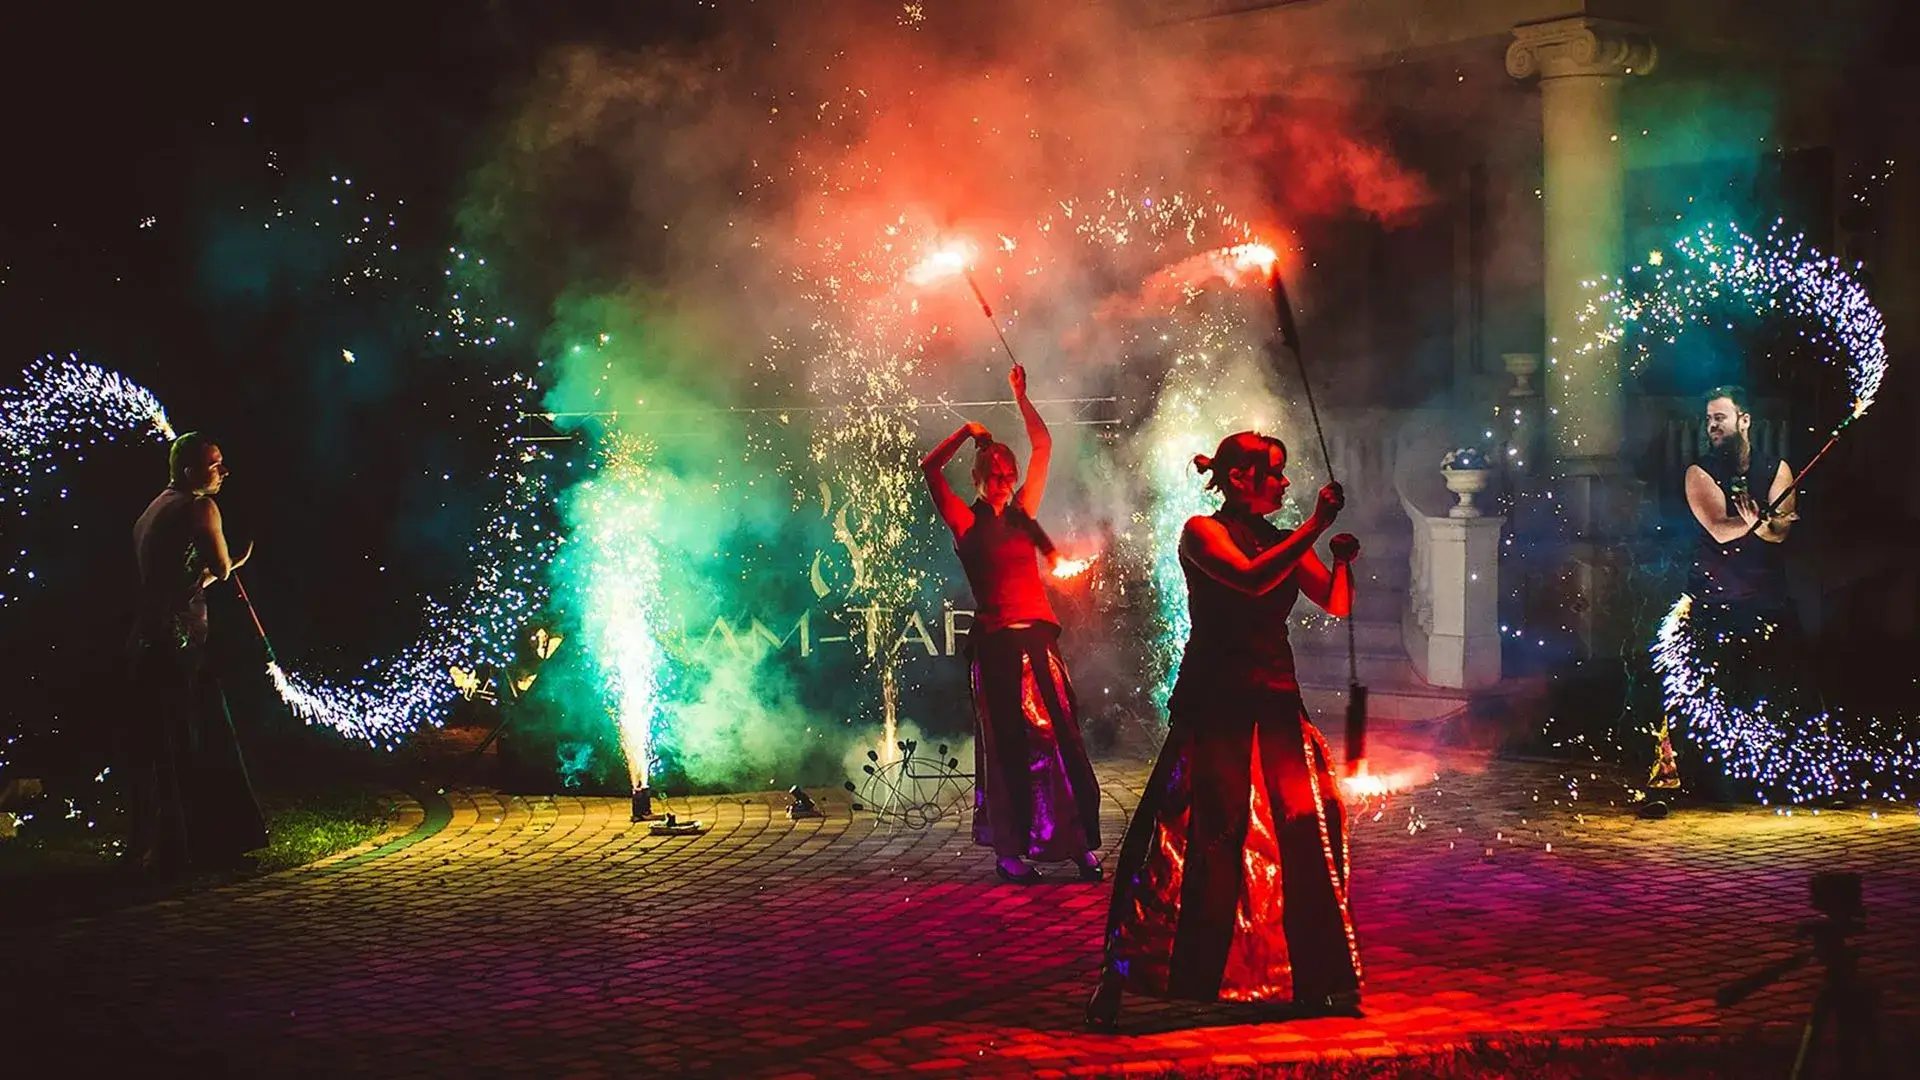 tancerze ognia wykonujący taniec z kolorowymi efektami pirotechnicznymi